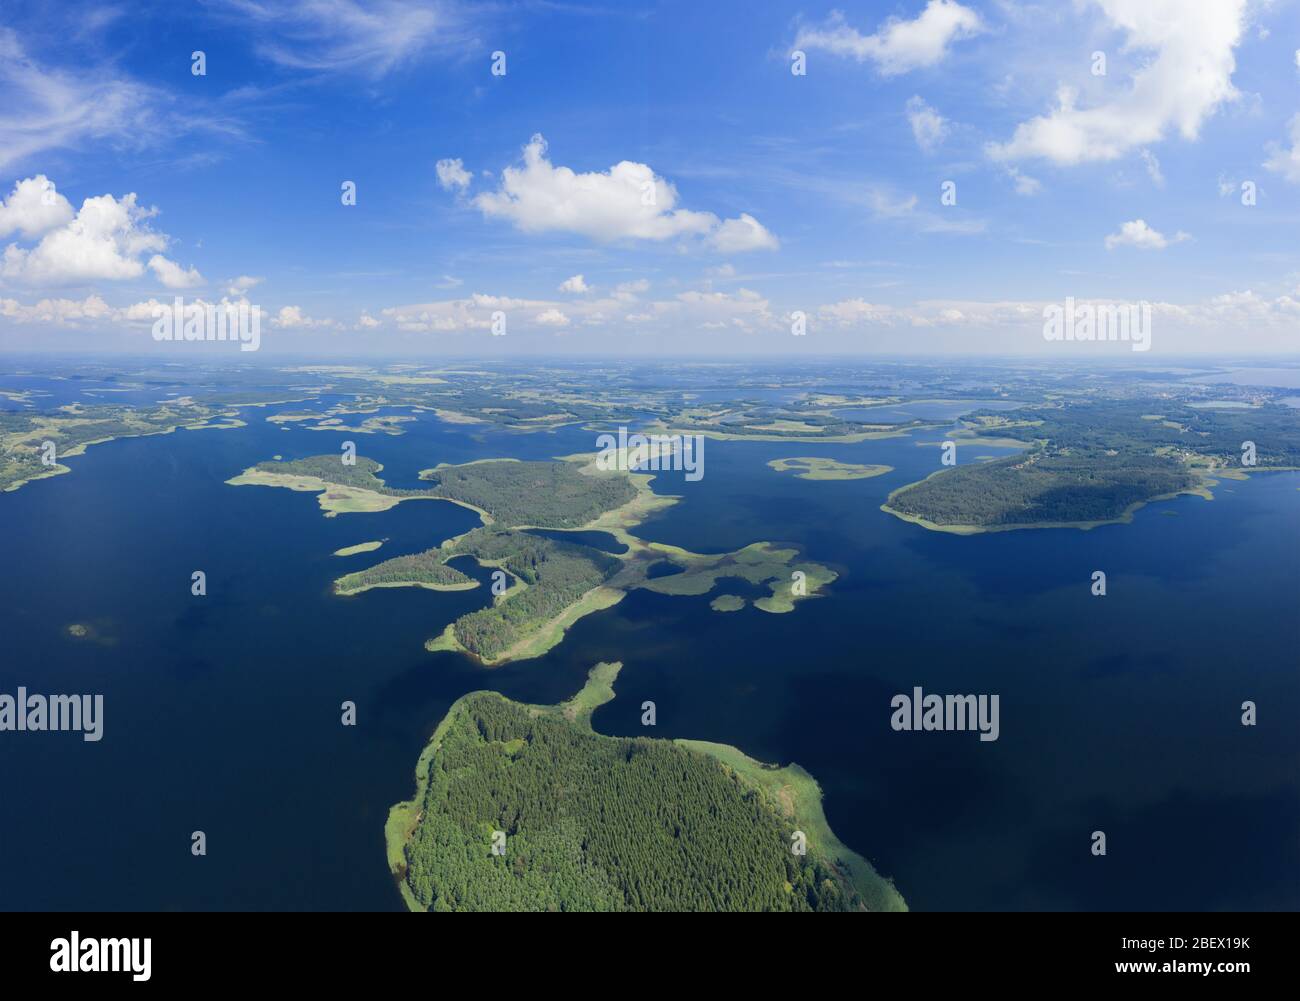 Magnifique panorama aérien sur le lac. Parc national Braslaw en Biélorussie. Beaucoup de lacs avec des îles et la forêt d'en haut Banque D'Images